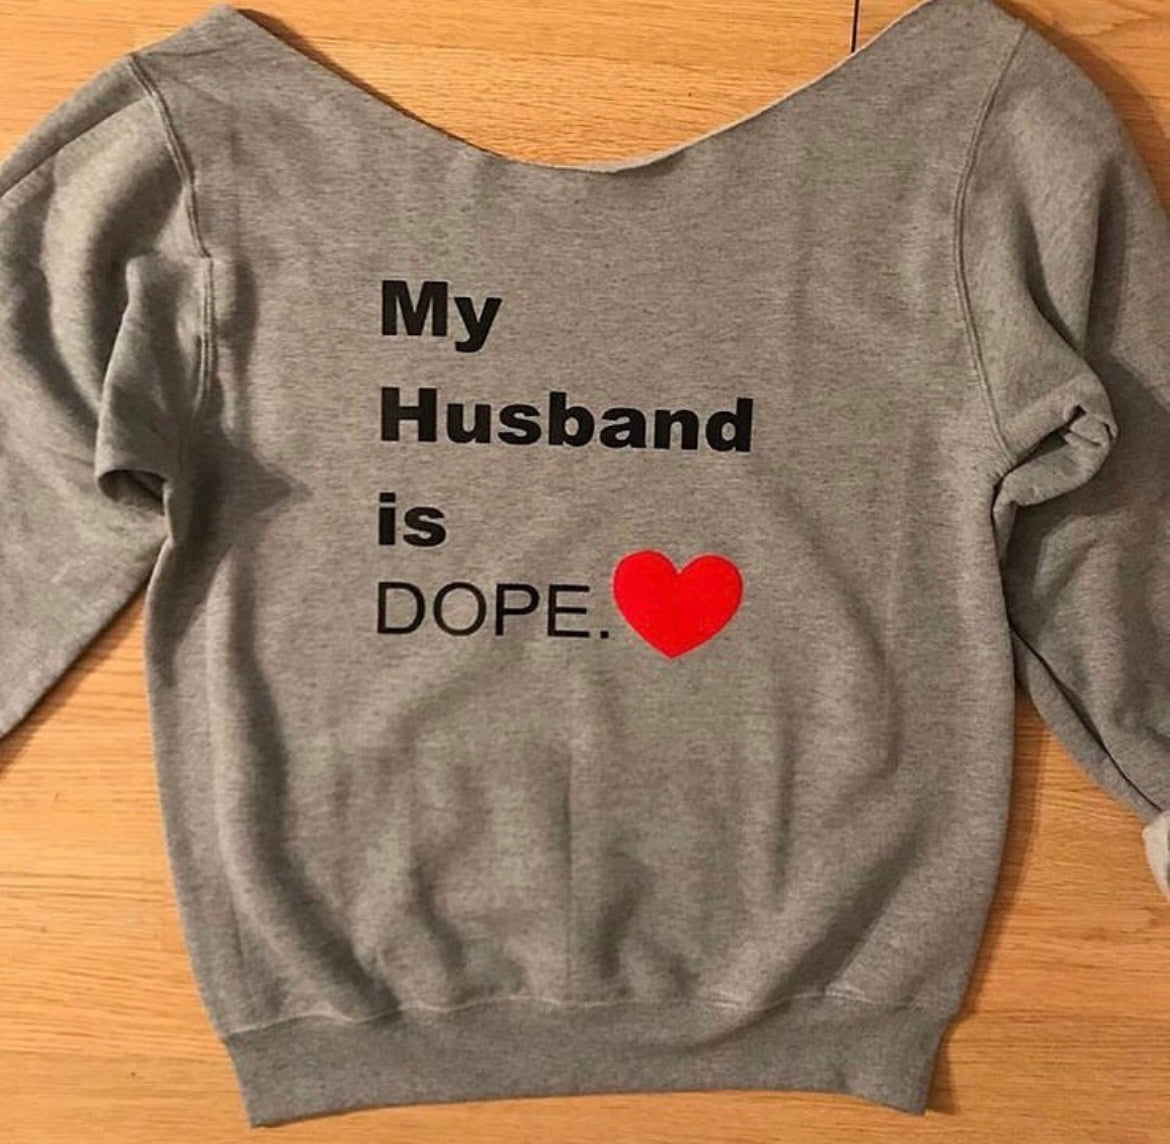 My Husband is Dope. Sweatshirt